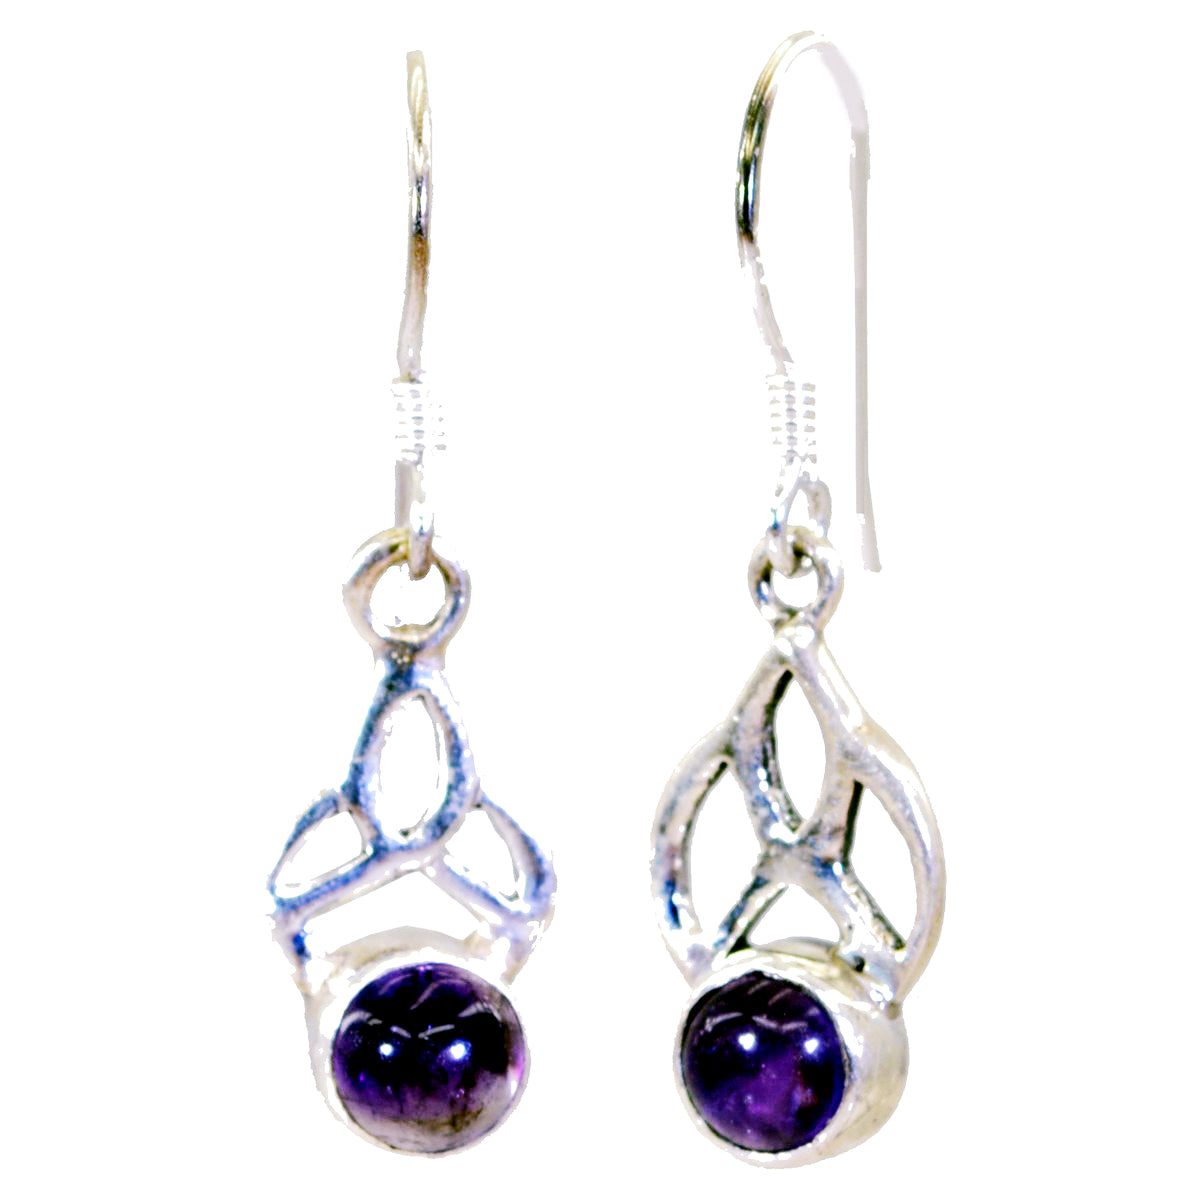 Riyo Nice Gemstone round Cabochon Purple Amethyst Silver Earring gift for good